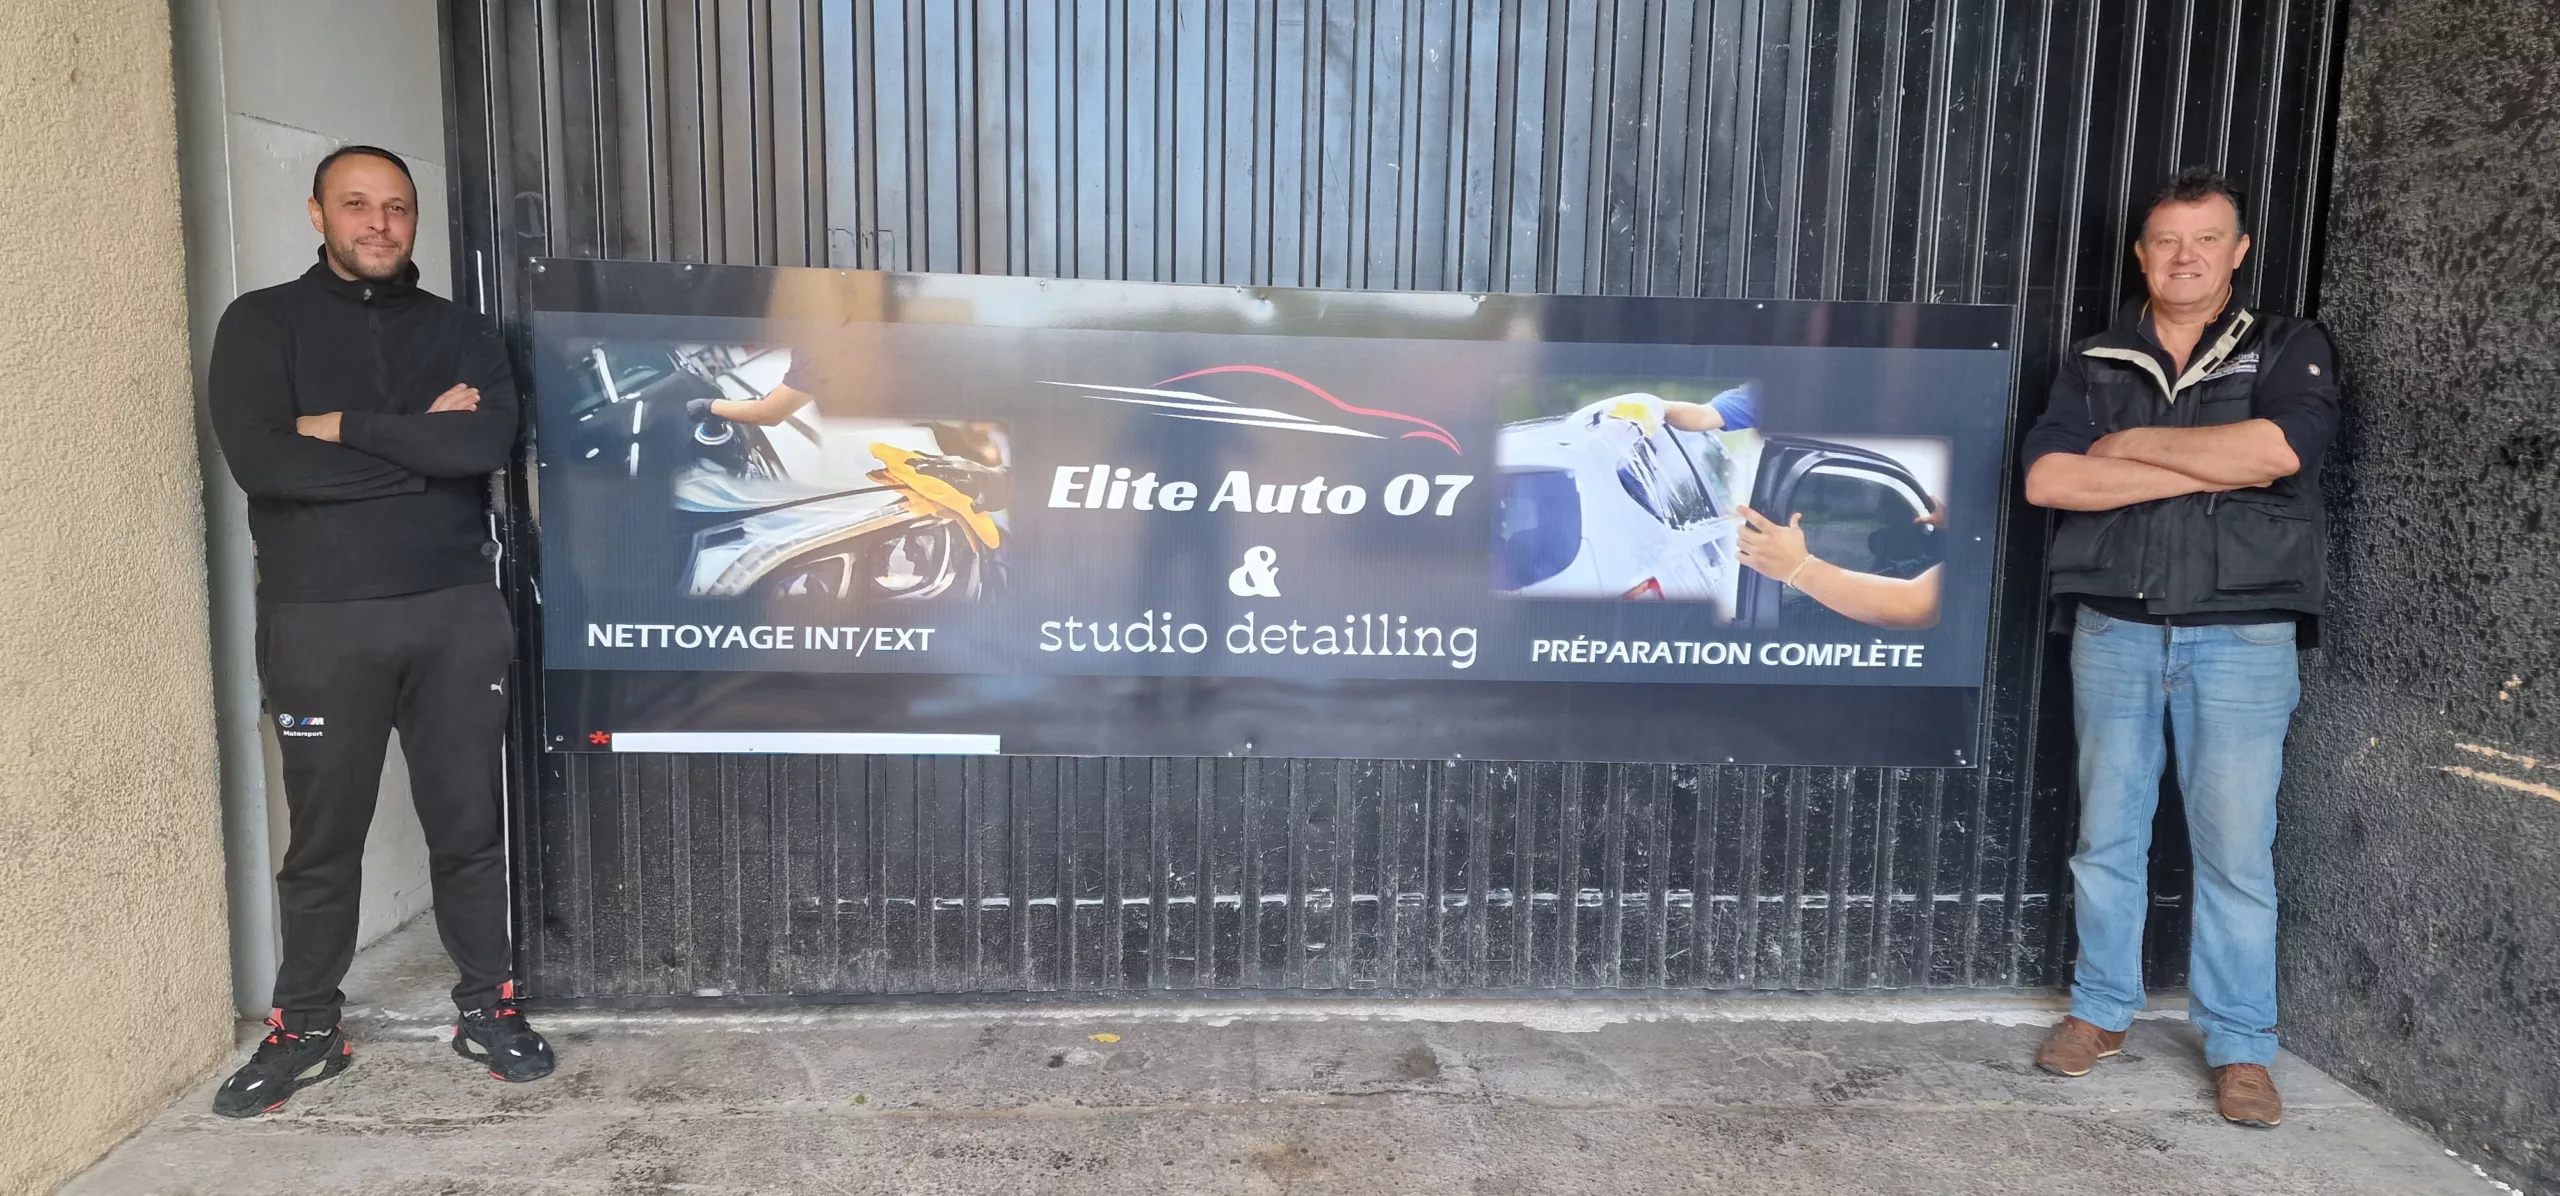 SAINT-ALEXANDRE : Elite Auto 07 et Studio Detailling, des Experts de l’Automobile !